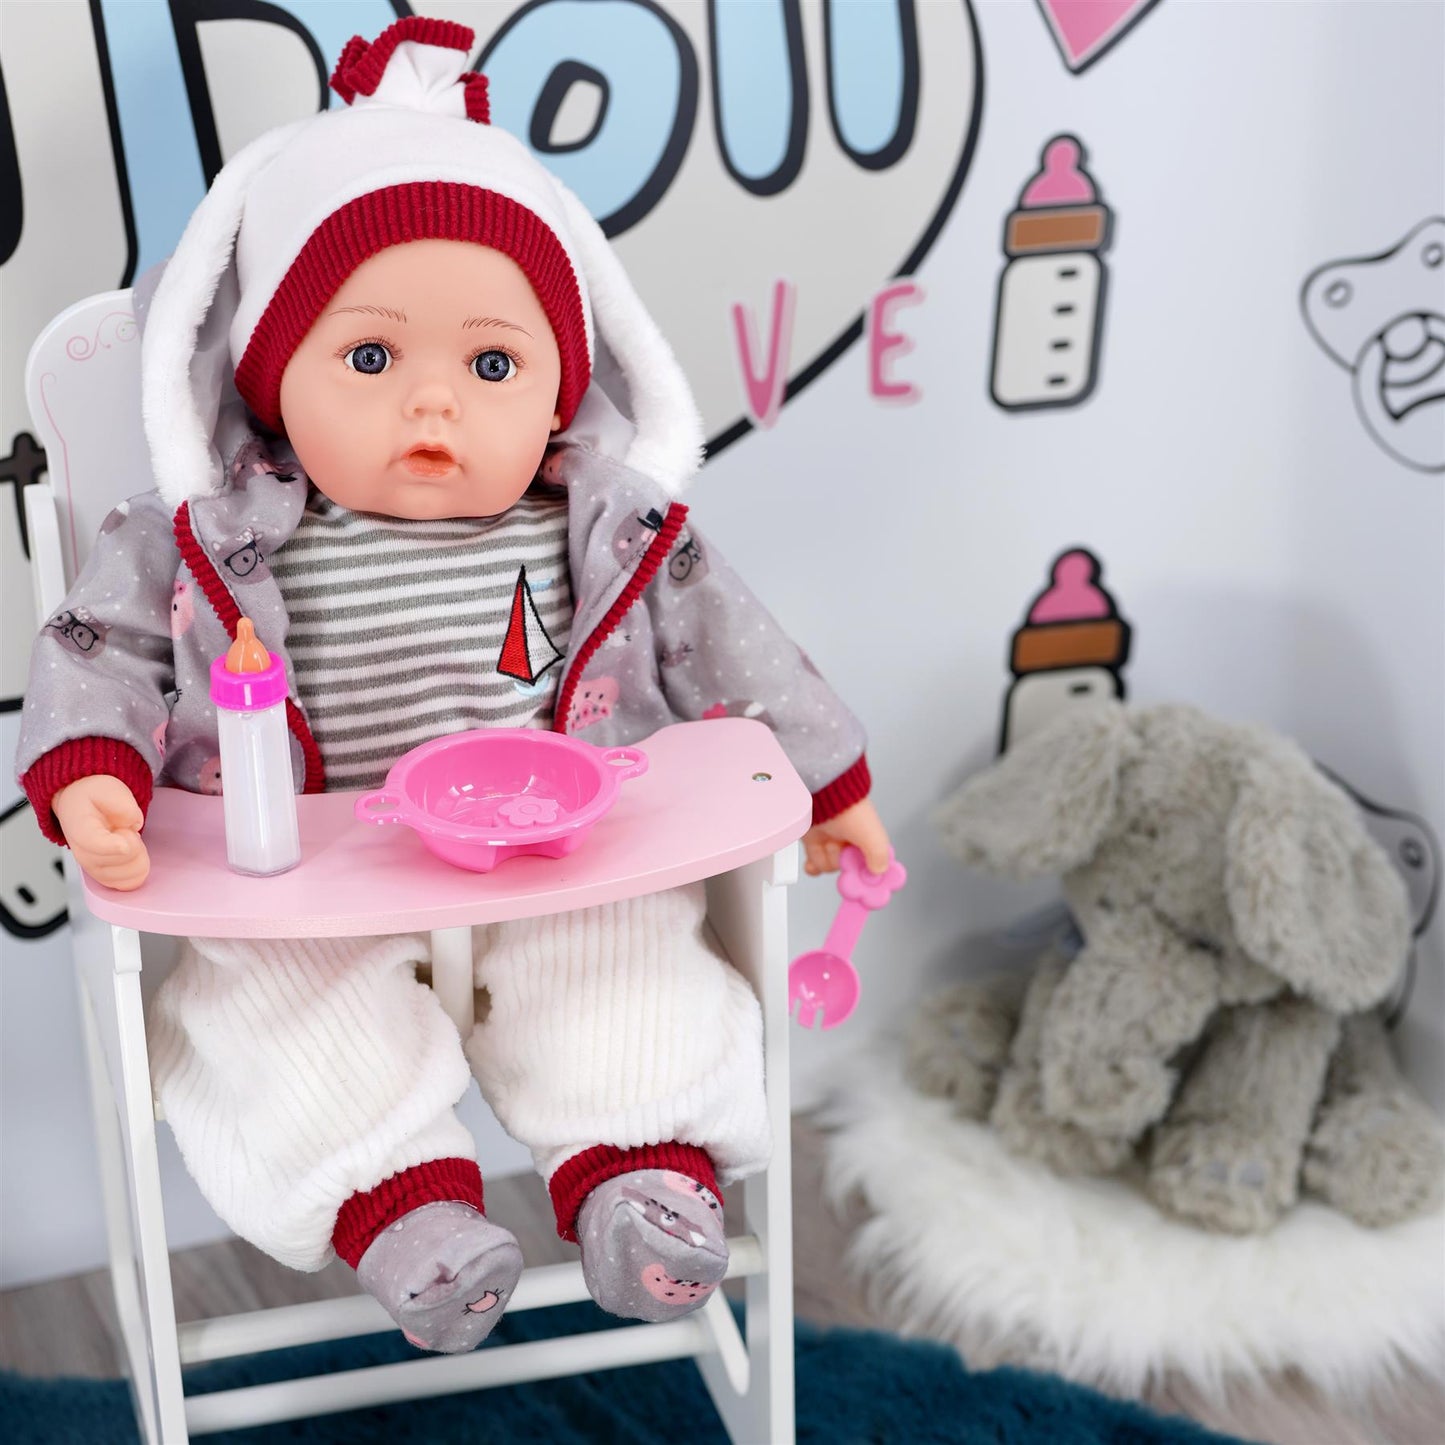 Grey Bibi Baby Doll Toy With Dummy & Sounds by BiBi Doll - UKBuyZone